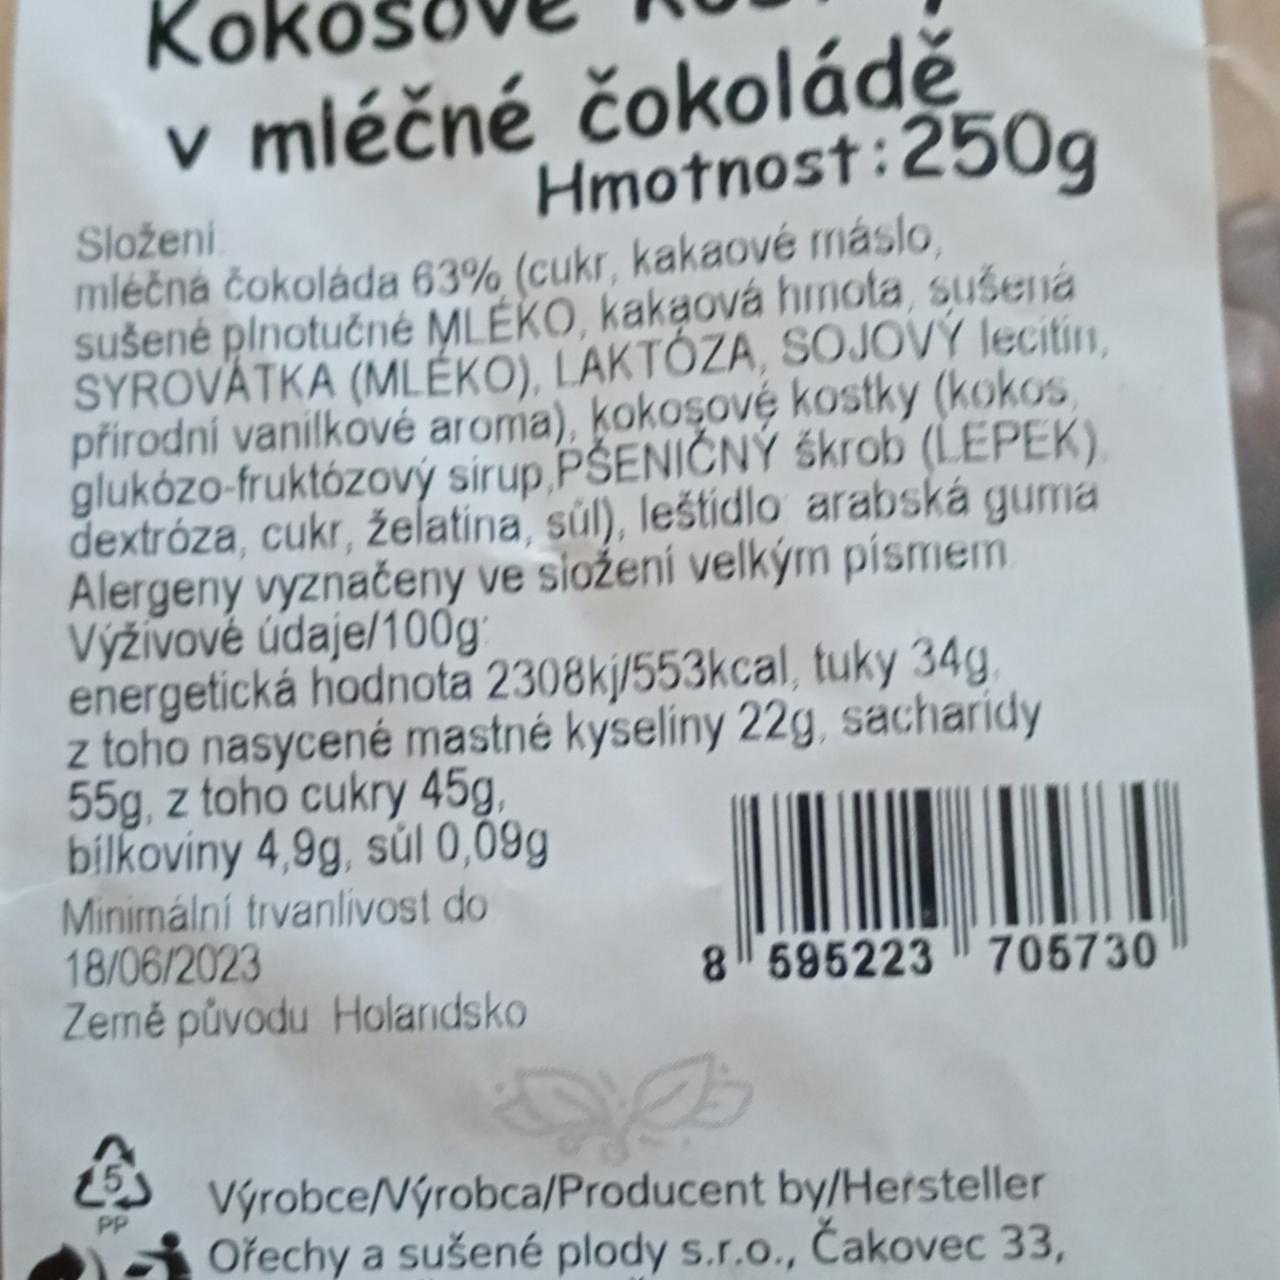 Fotografie - Kokosové kostky v mléčné čokoládě Ochutnej Ořech.cz